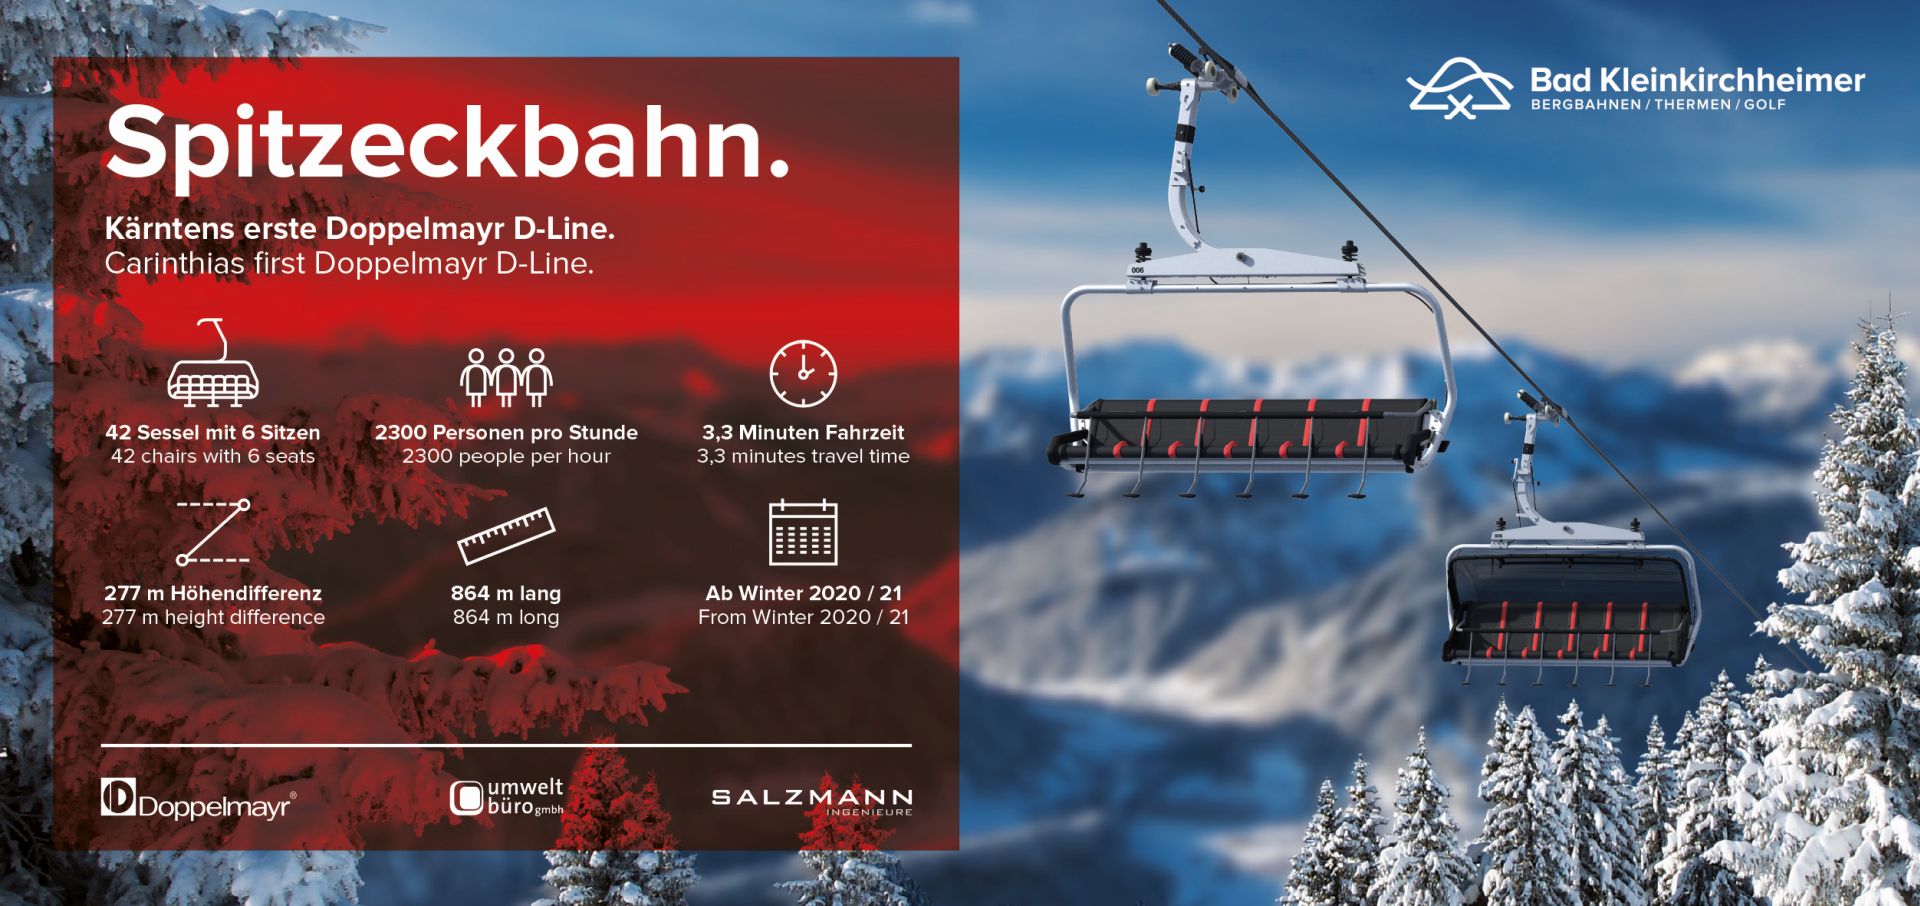 Kärntens erste Doppelmayr D-Line mit höchstem Komfort, Spitzeckbahn im Skigebiet Bad Kleinkirchheimer Bergbahnen, Top Skigebiet Kärnten